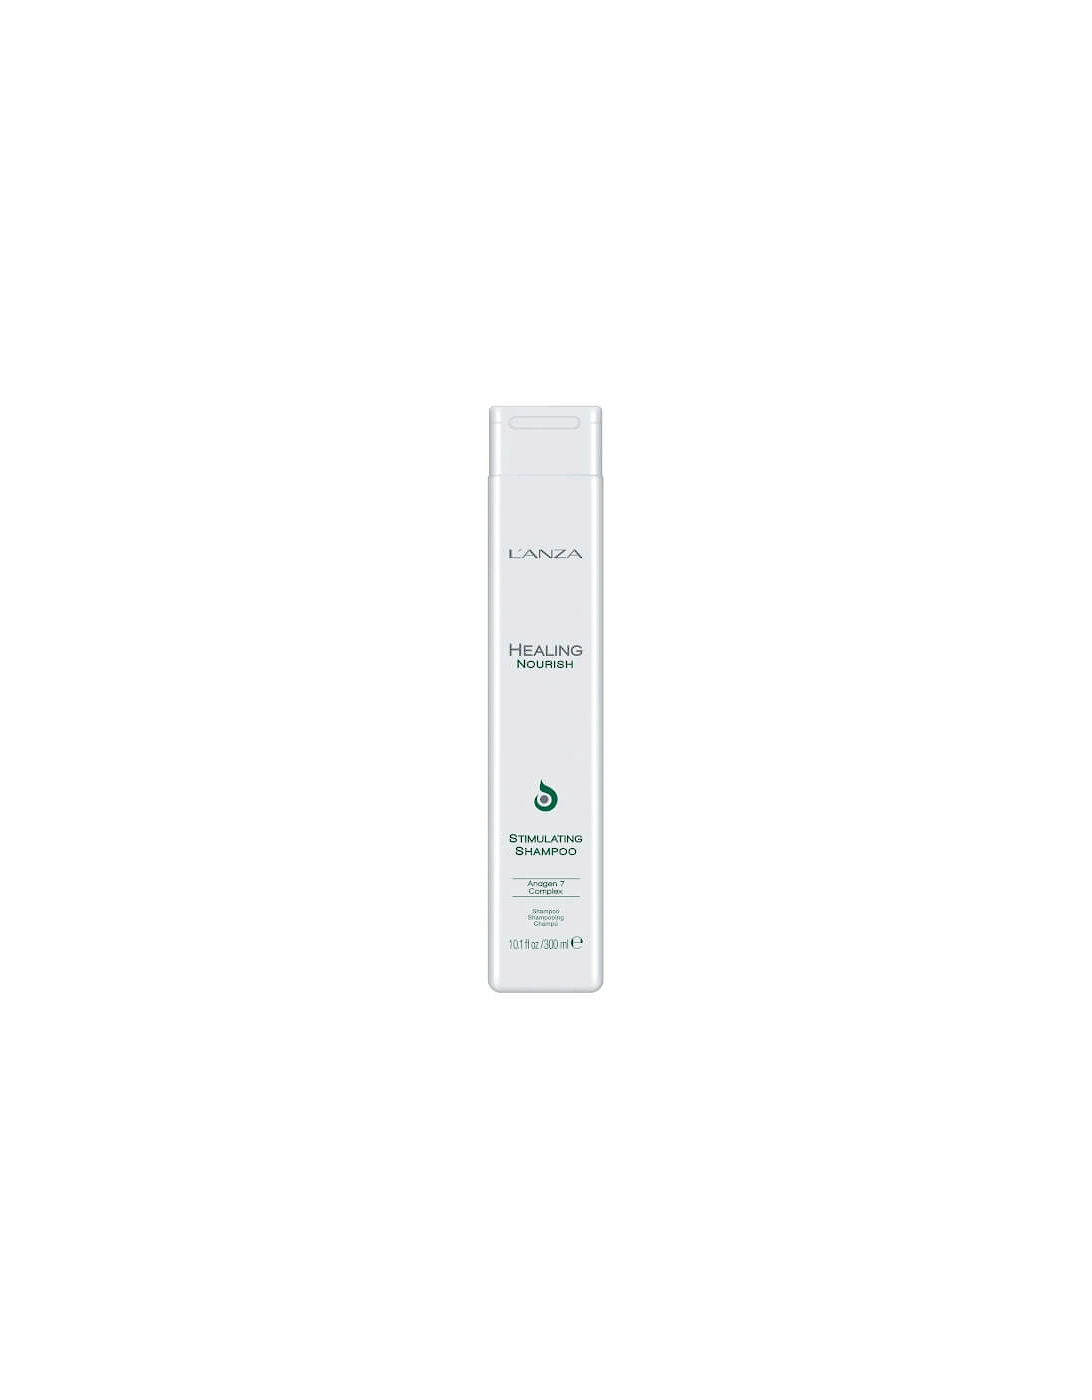 Healing Nourish Stimulating Shampoo (300ml) - L'ANZA, 2 of 1